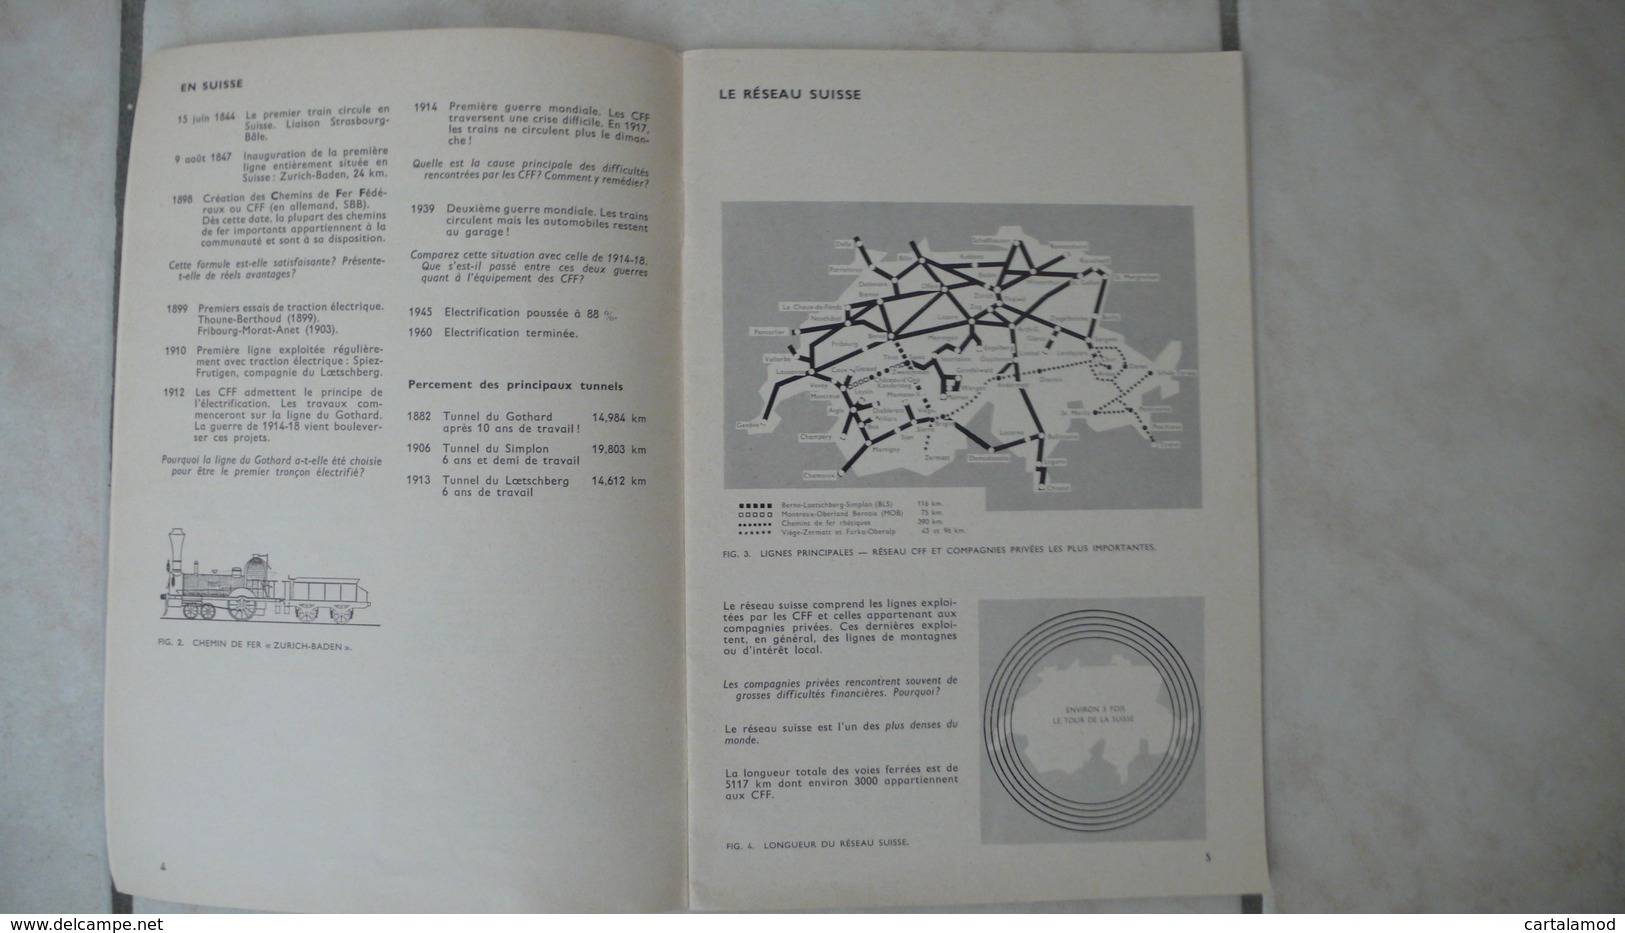 Le Rail La Route - Cahiers D'enseignement Pratique 65 - Suisse 1968 Ed. Delachaux & Niestlé Neuchatel - Schede Didattiche